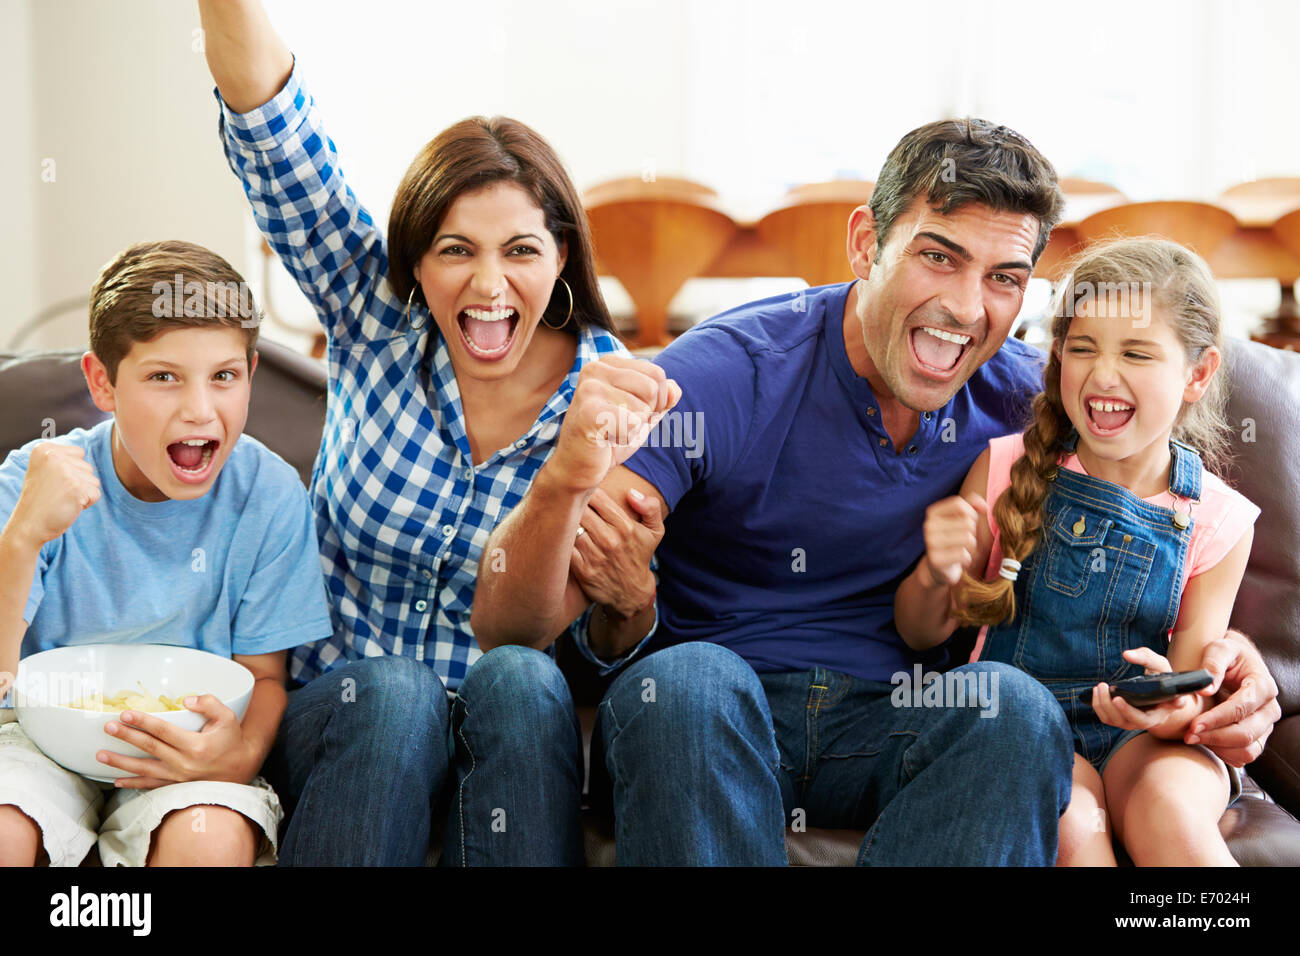 Familia mirando fútbol celebrando la meta Foto de stock